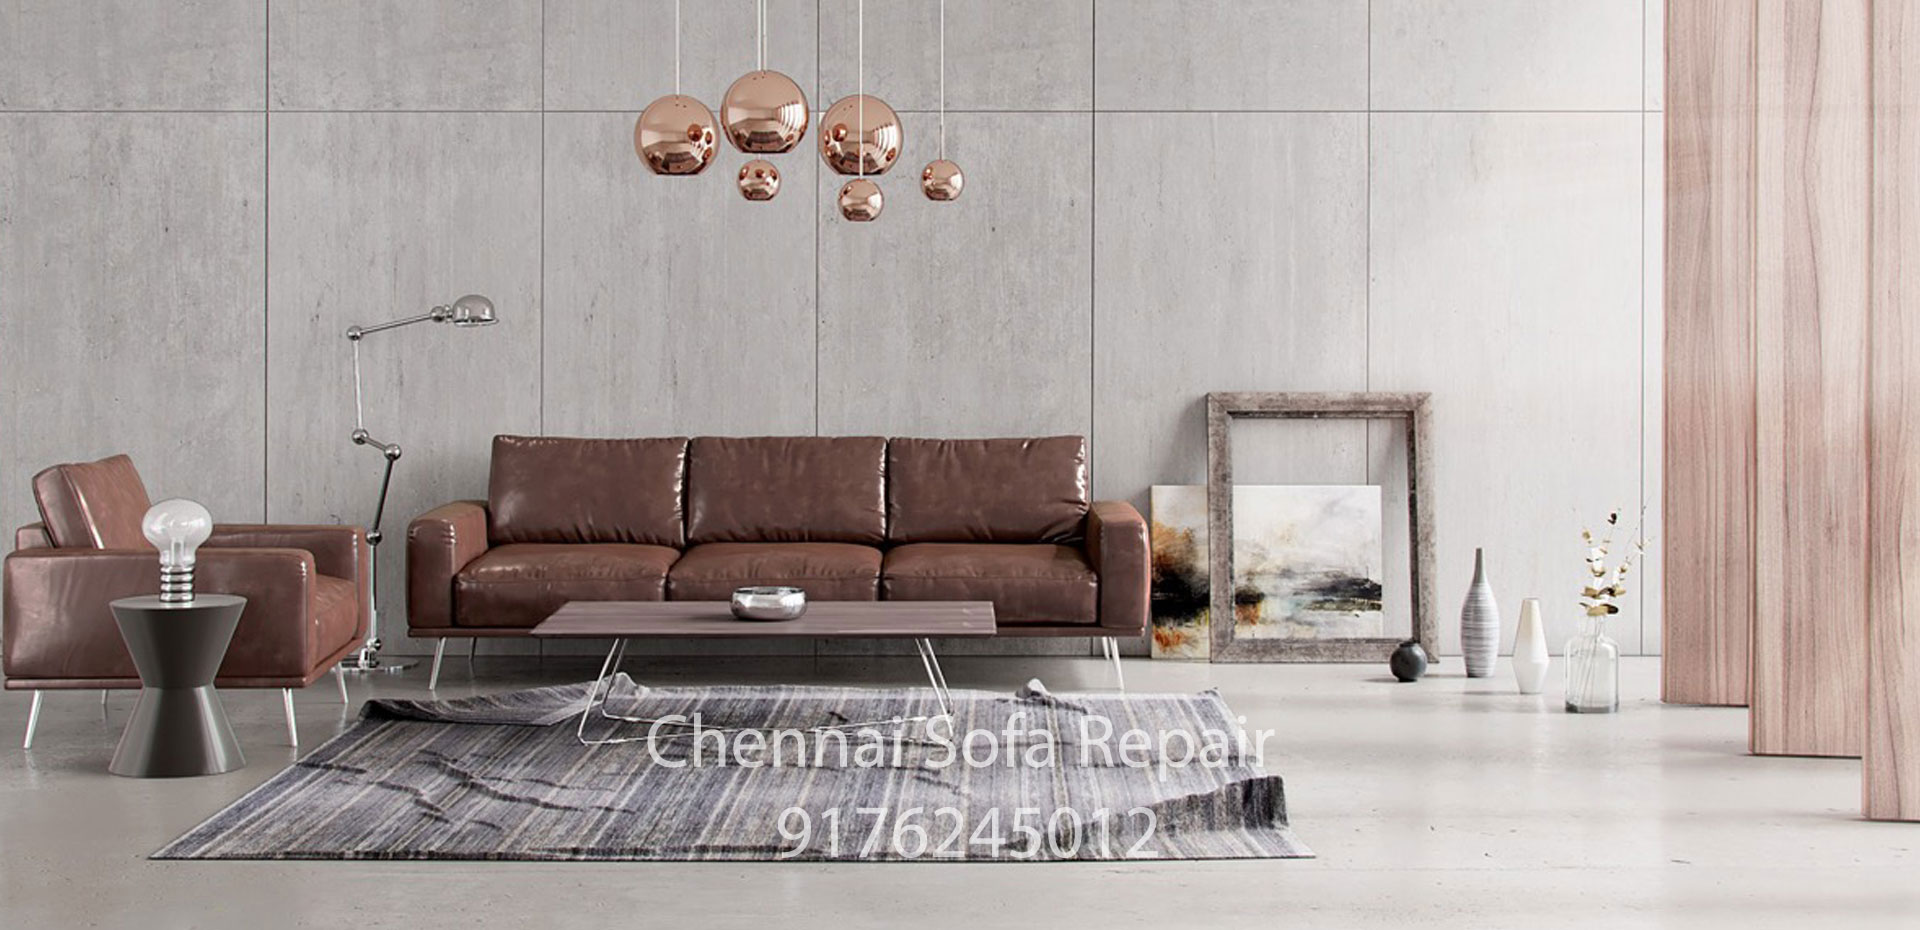 sofa renovation Nesapakkam Chennai